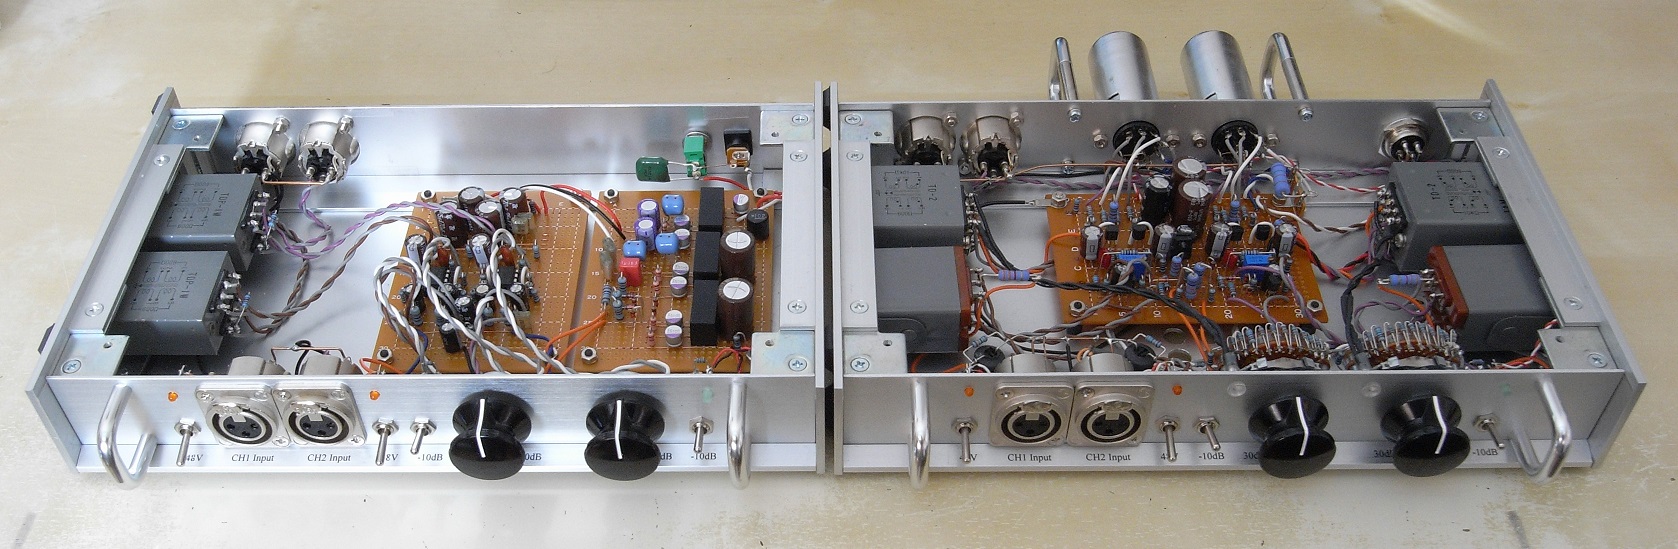 送料込 TL AUDIO マイク プリアンプ MIC PRE Amplifier コンプレッサー COMPRESSOR INSTRUMENT